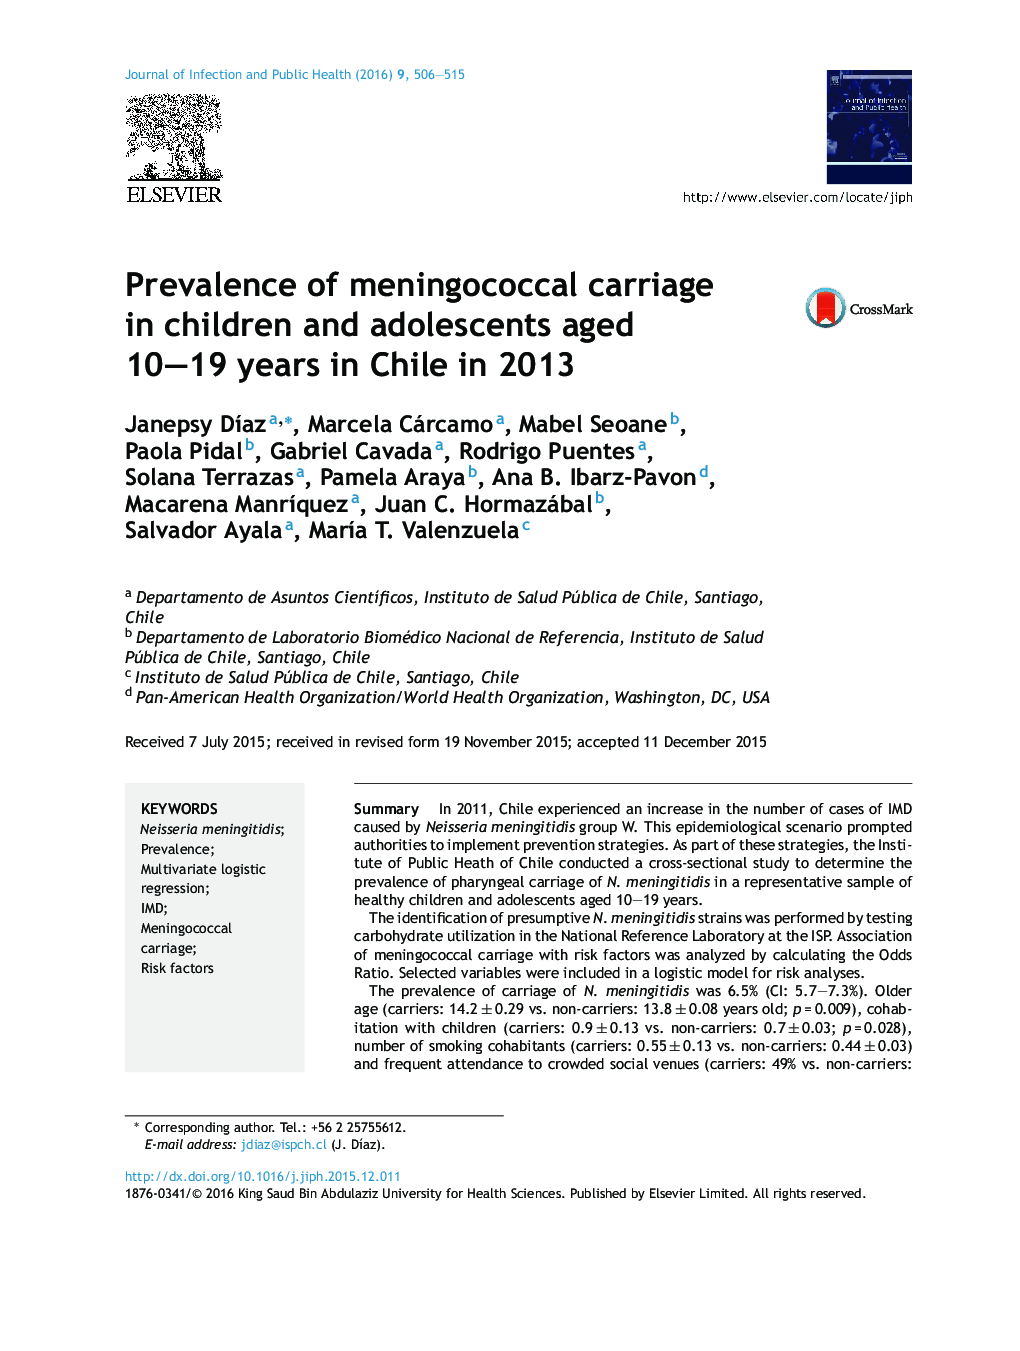 شیوع حمل مننژیت در کودکان و نوجوانان 10 تا 19 ساله در شیلی در سال 2013